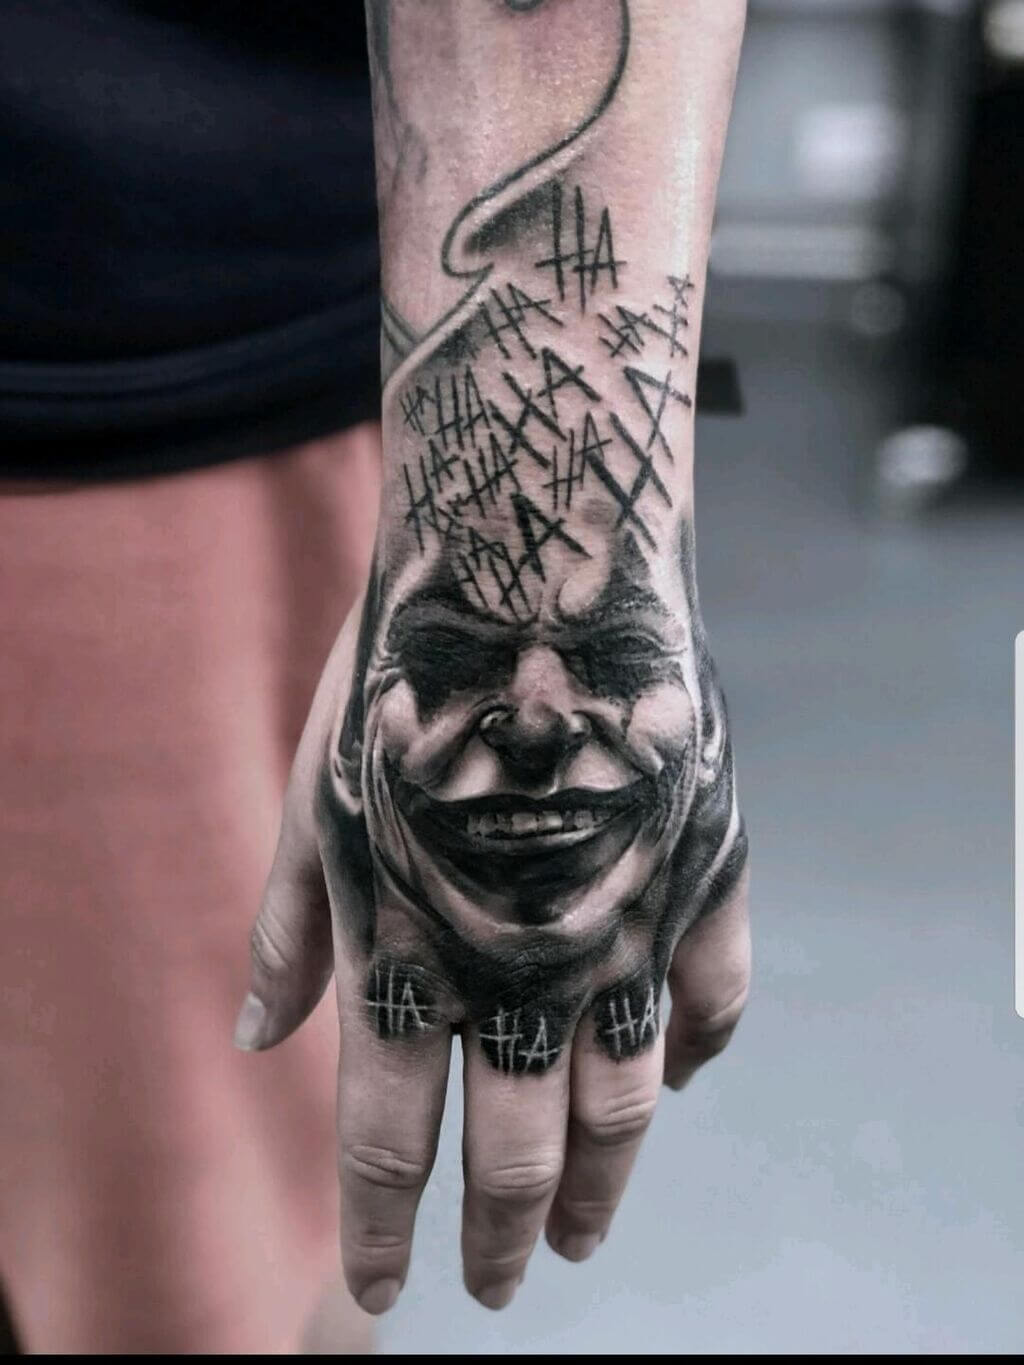 Joker-Inspired Hand Tattoos for Men